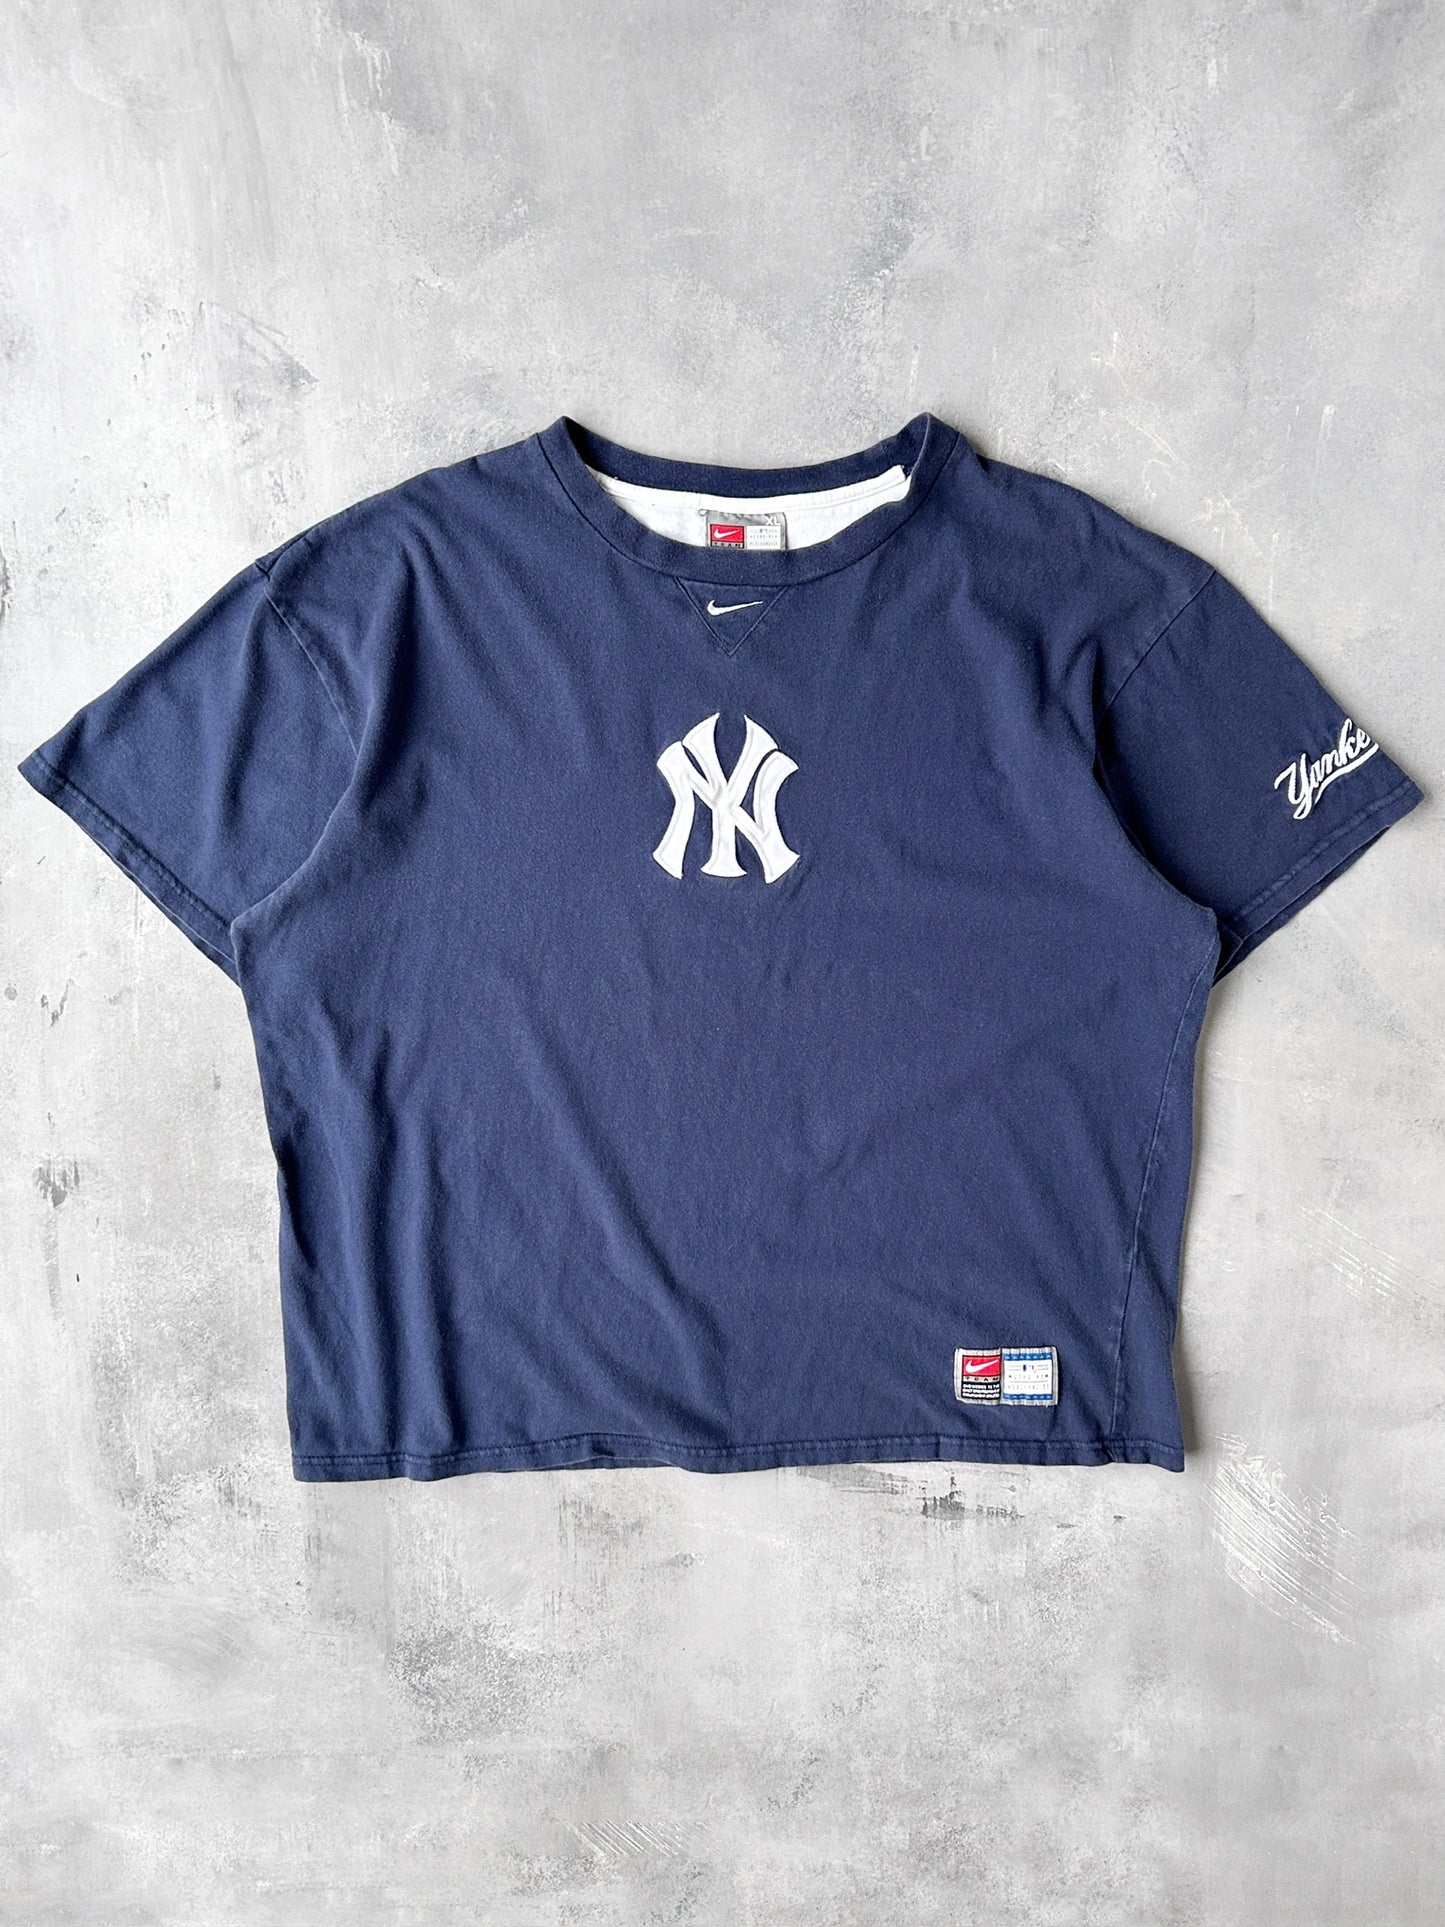 New York Yankees Nike T-Shirt 00's - XXL